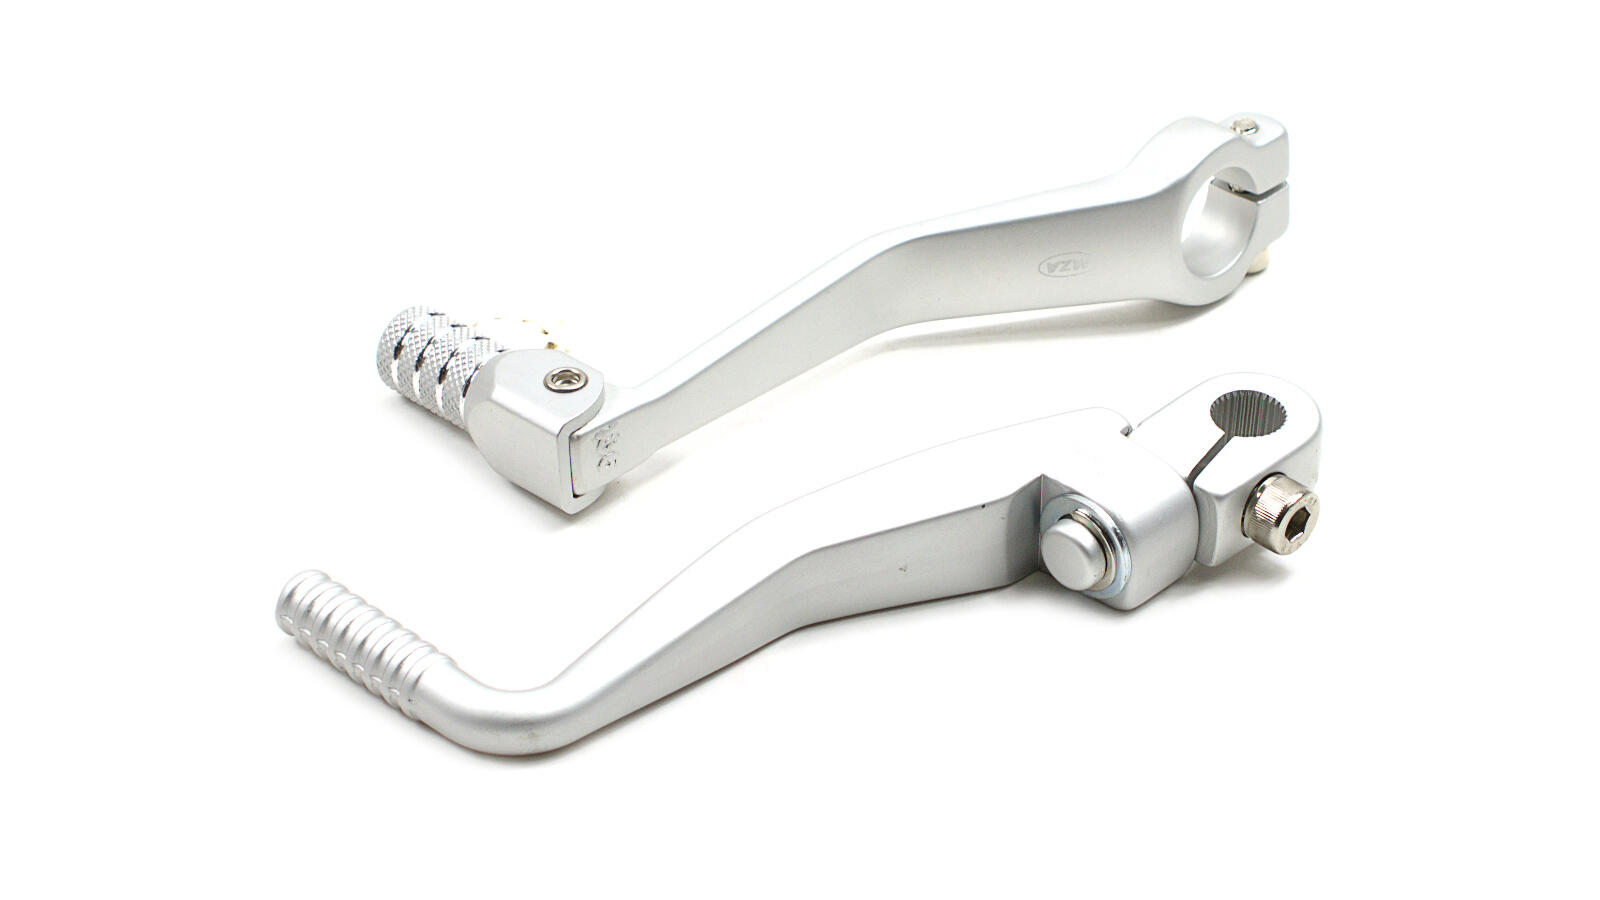 Kickstarterhebel  Fußschalthebel Silber Matt für Simson S51 usw Räumung 80005E